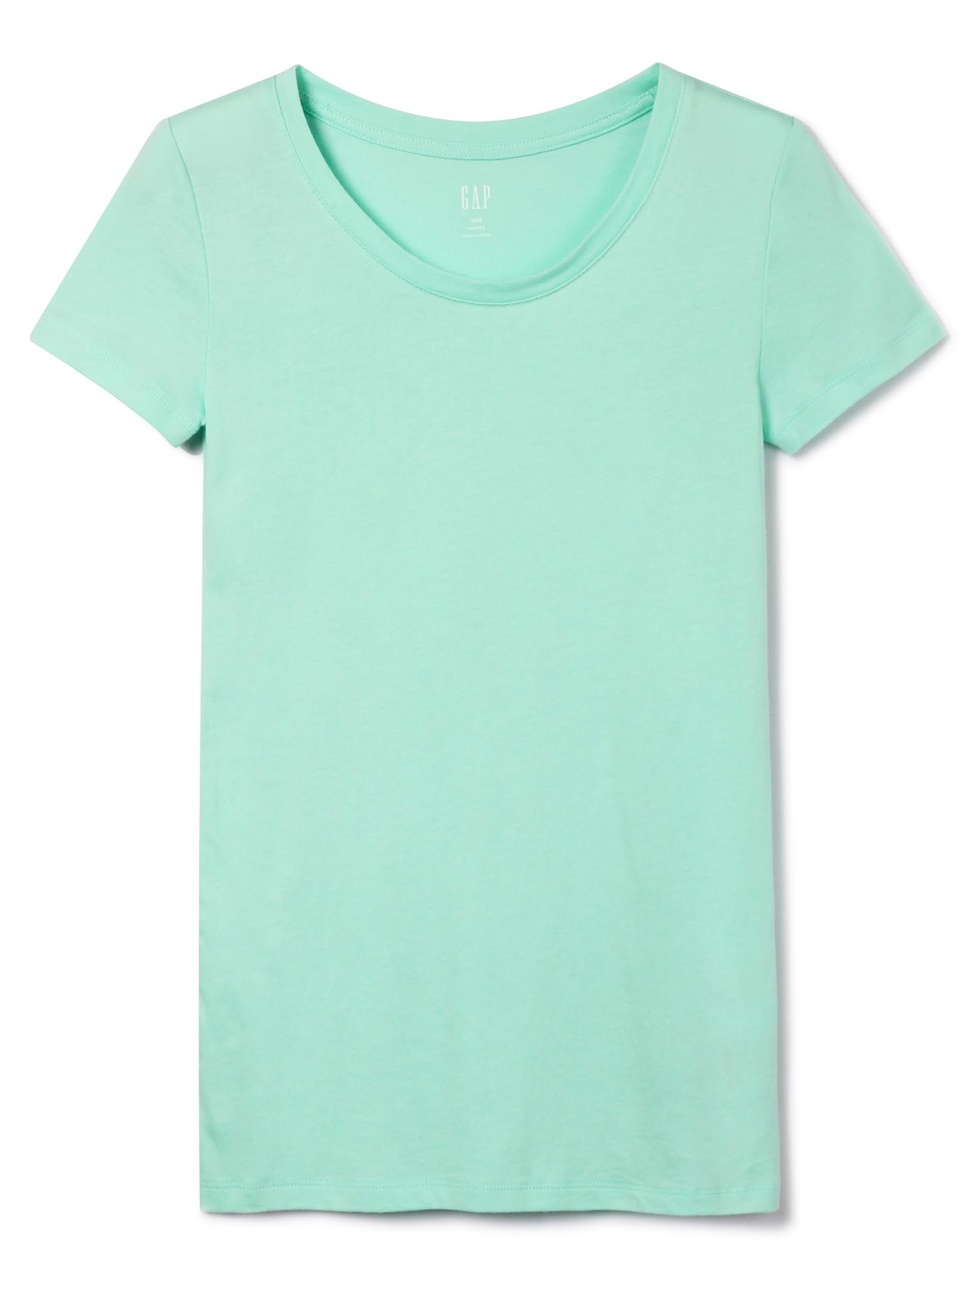 女裝|舒適素色圓領短袖T恤-淺綠色